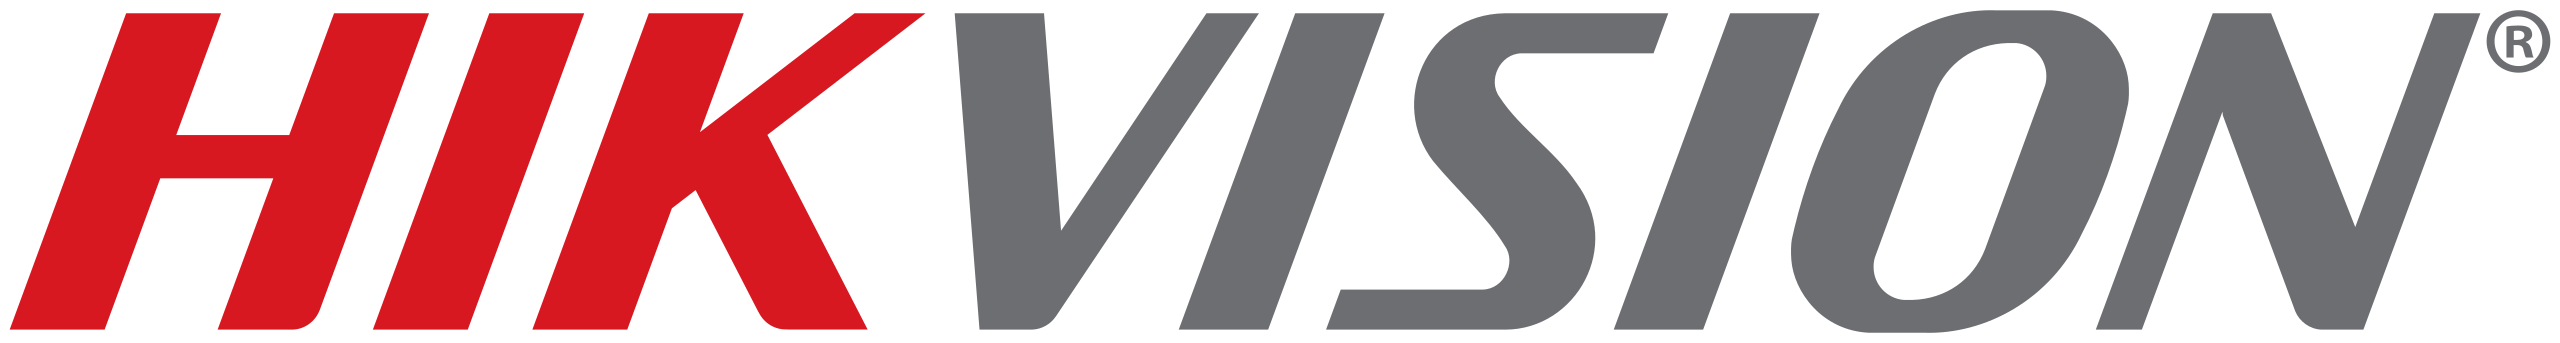 Файл:Hikvision logo.svg — Википедия